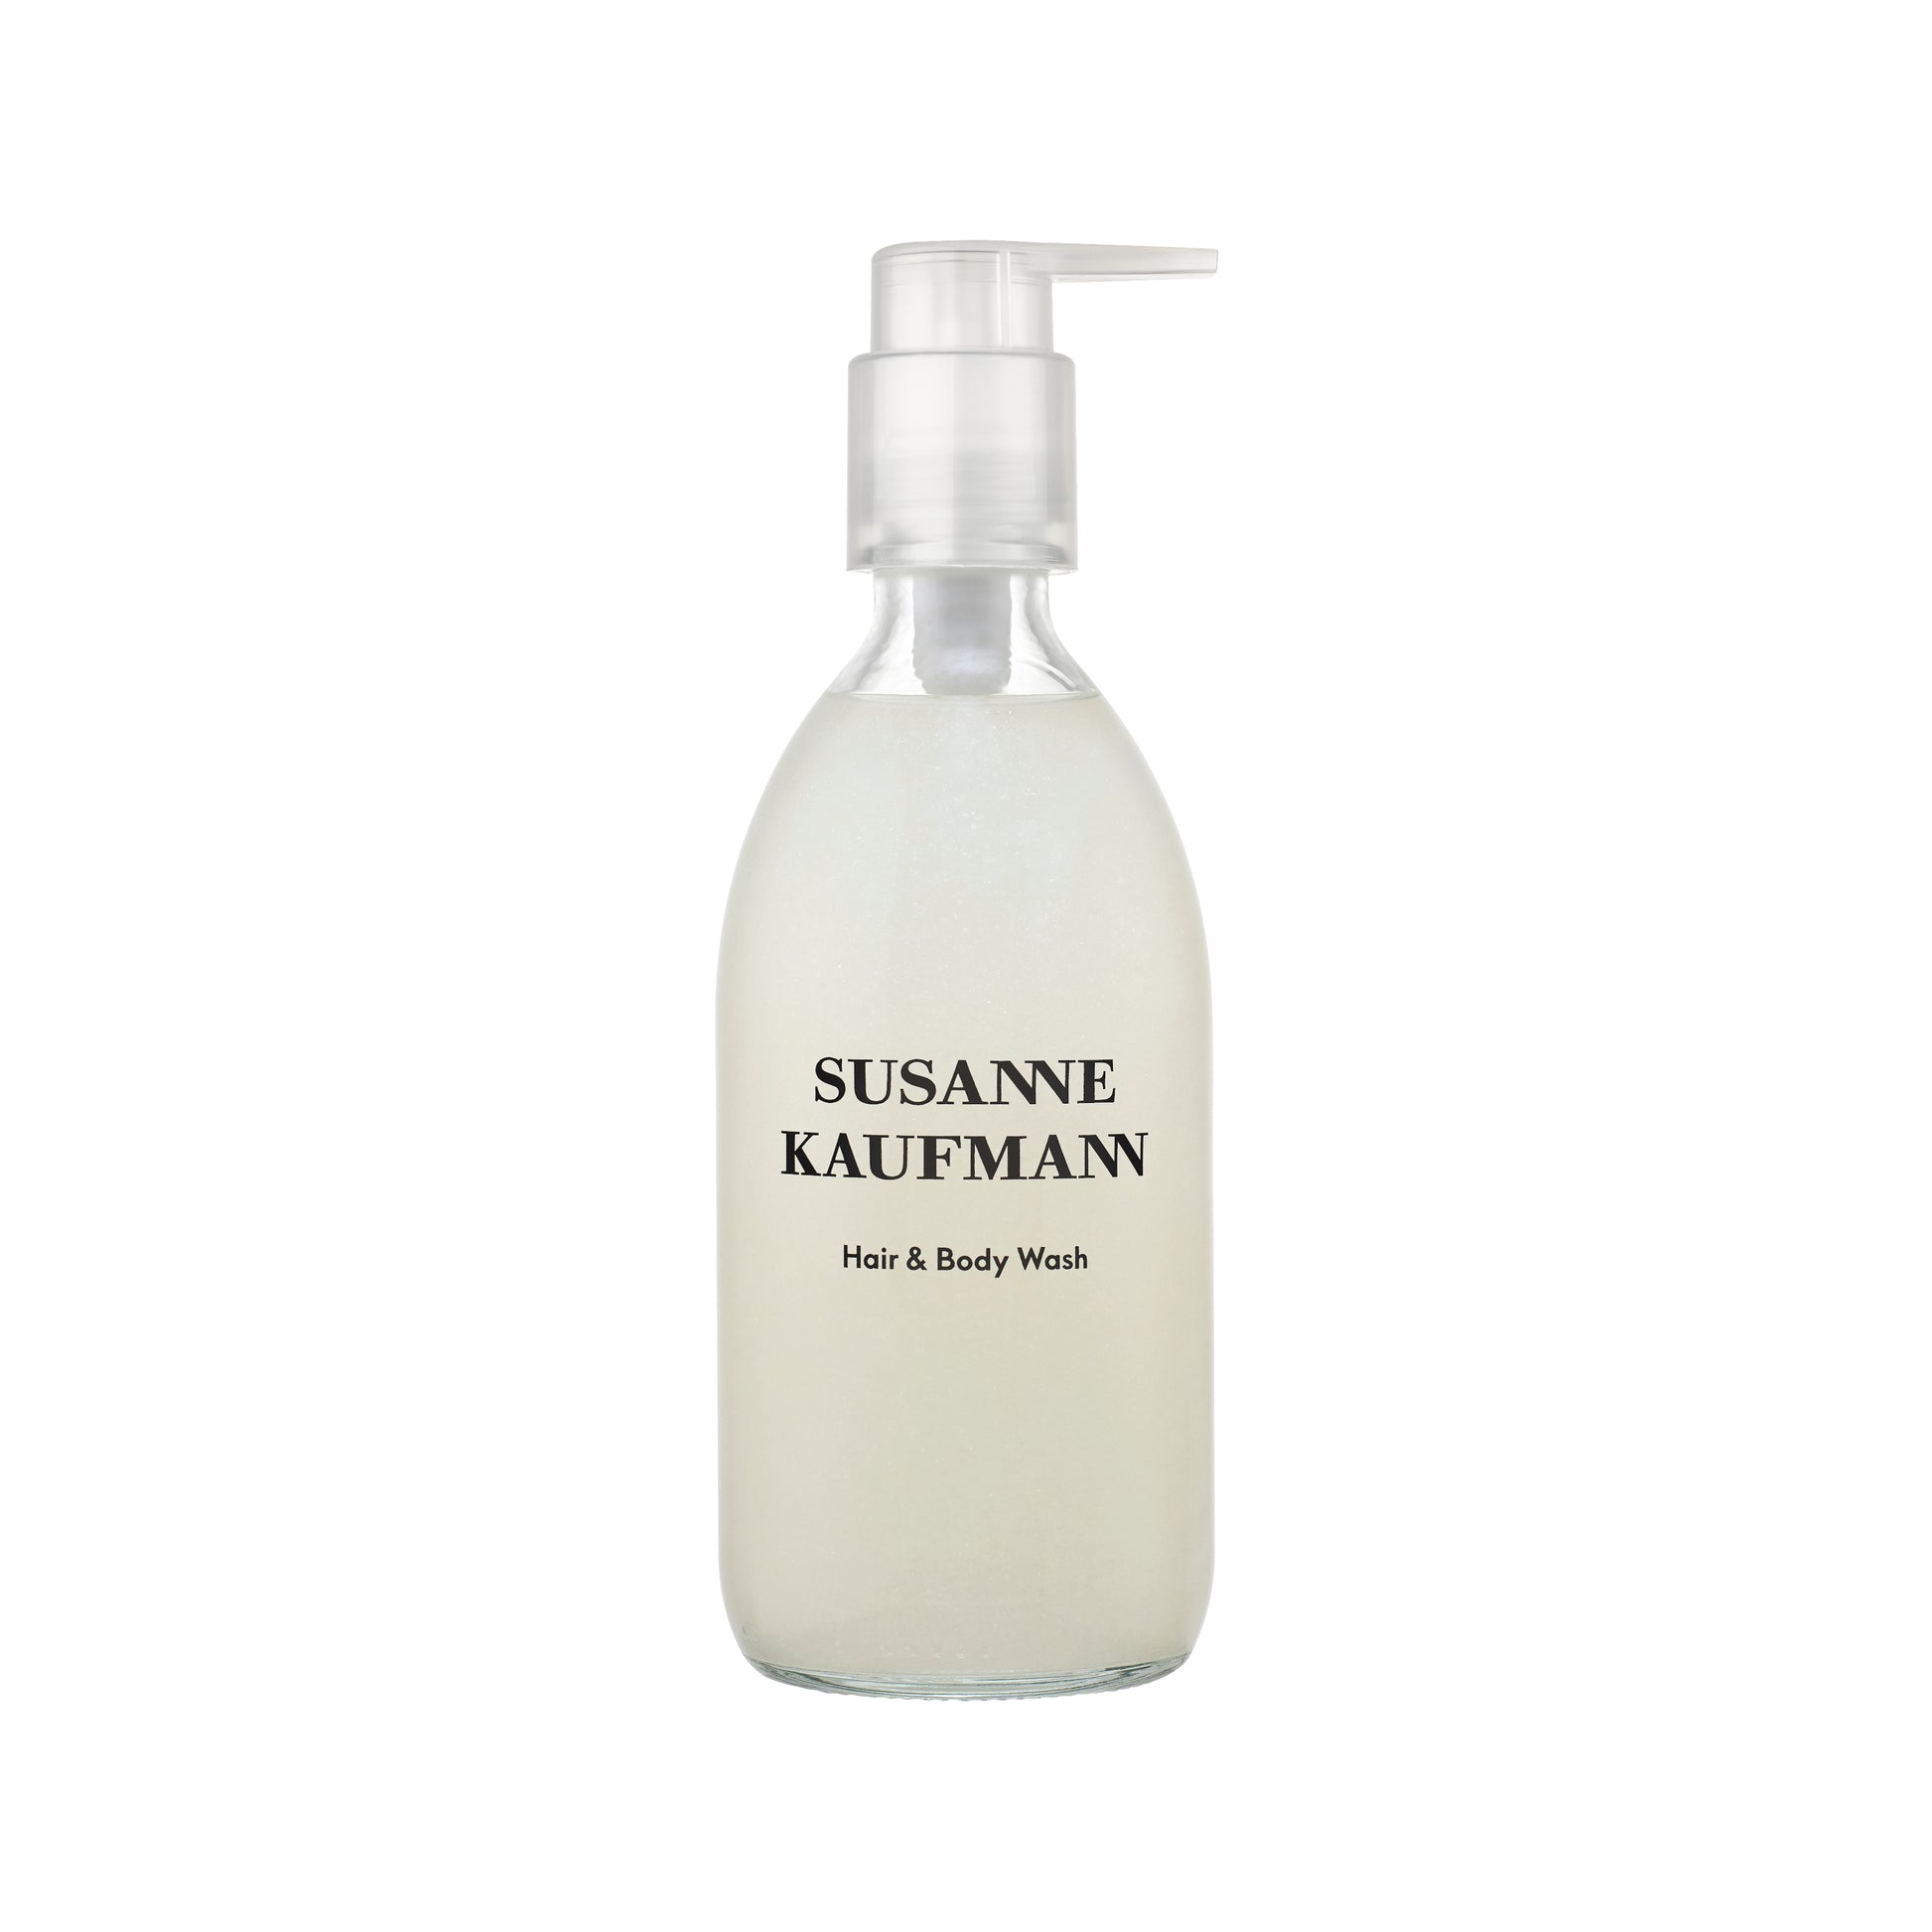 SUSANNE-KAUFMANN-Hair-Body-Wash